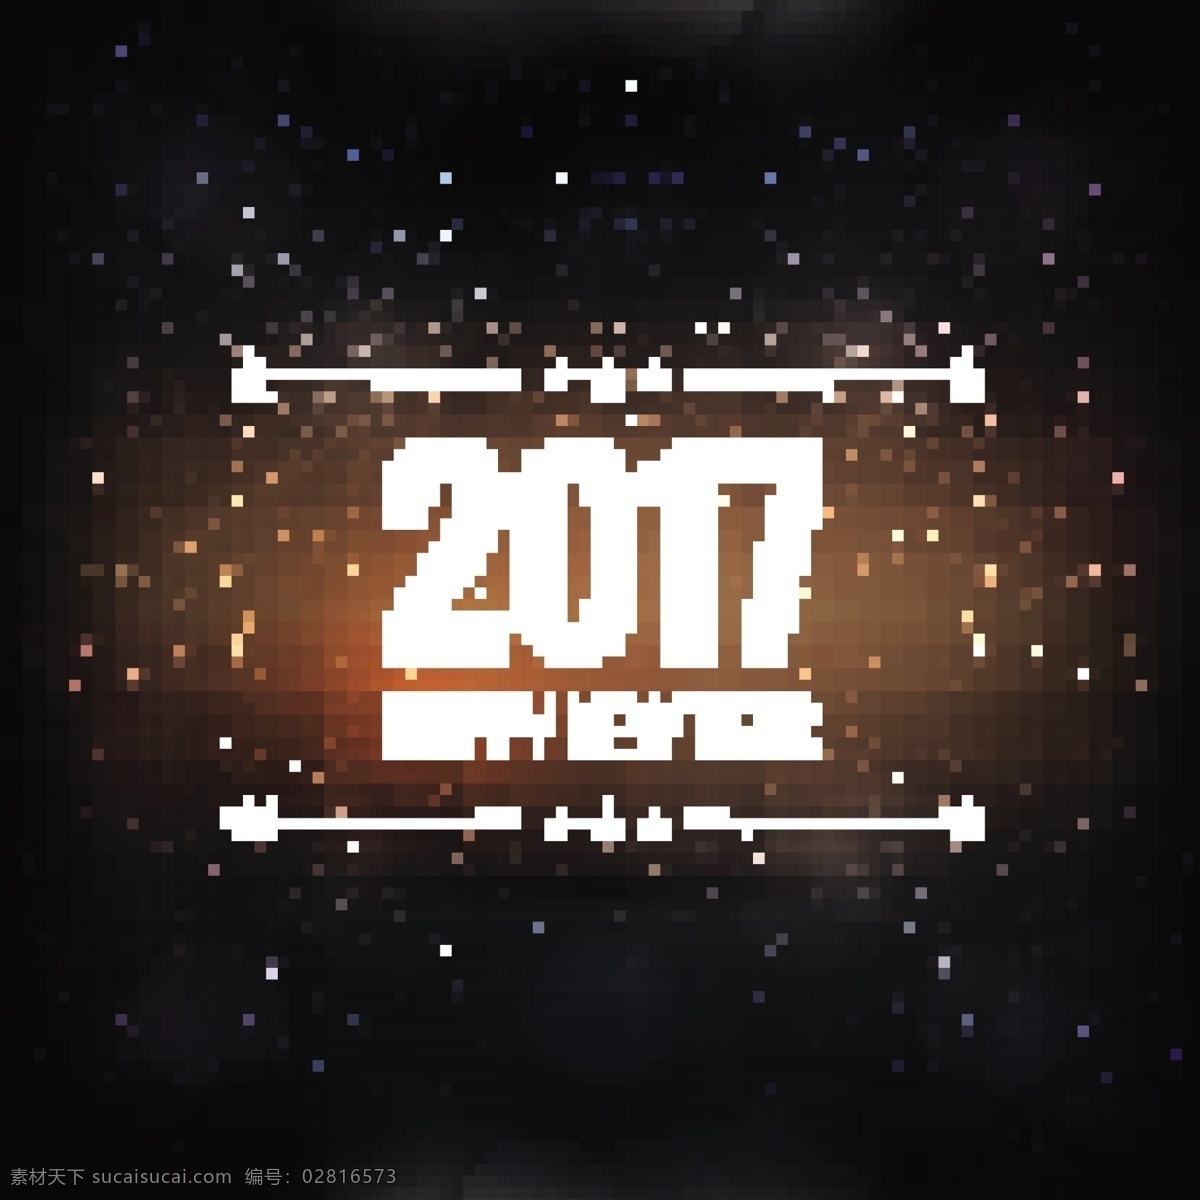 新 年 星星 黑暗 背景 晚会 新年 冬季 喜庆 节日 多彩 大背景 庆祝 十二月 新年前夕 2017